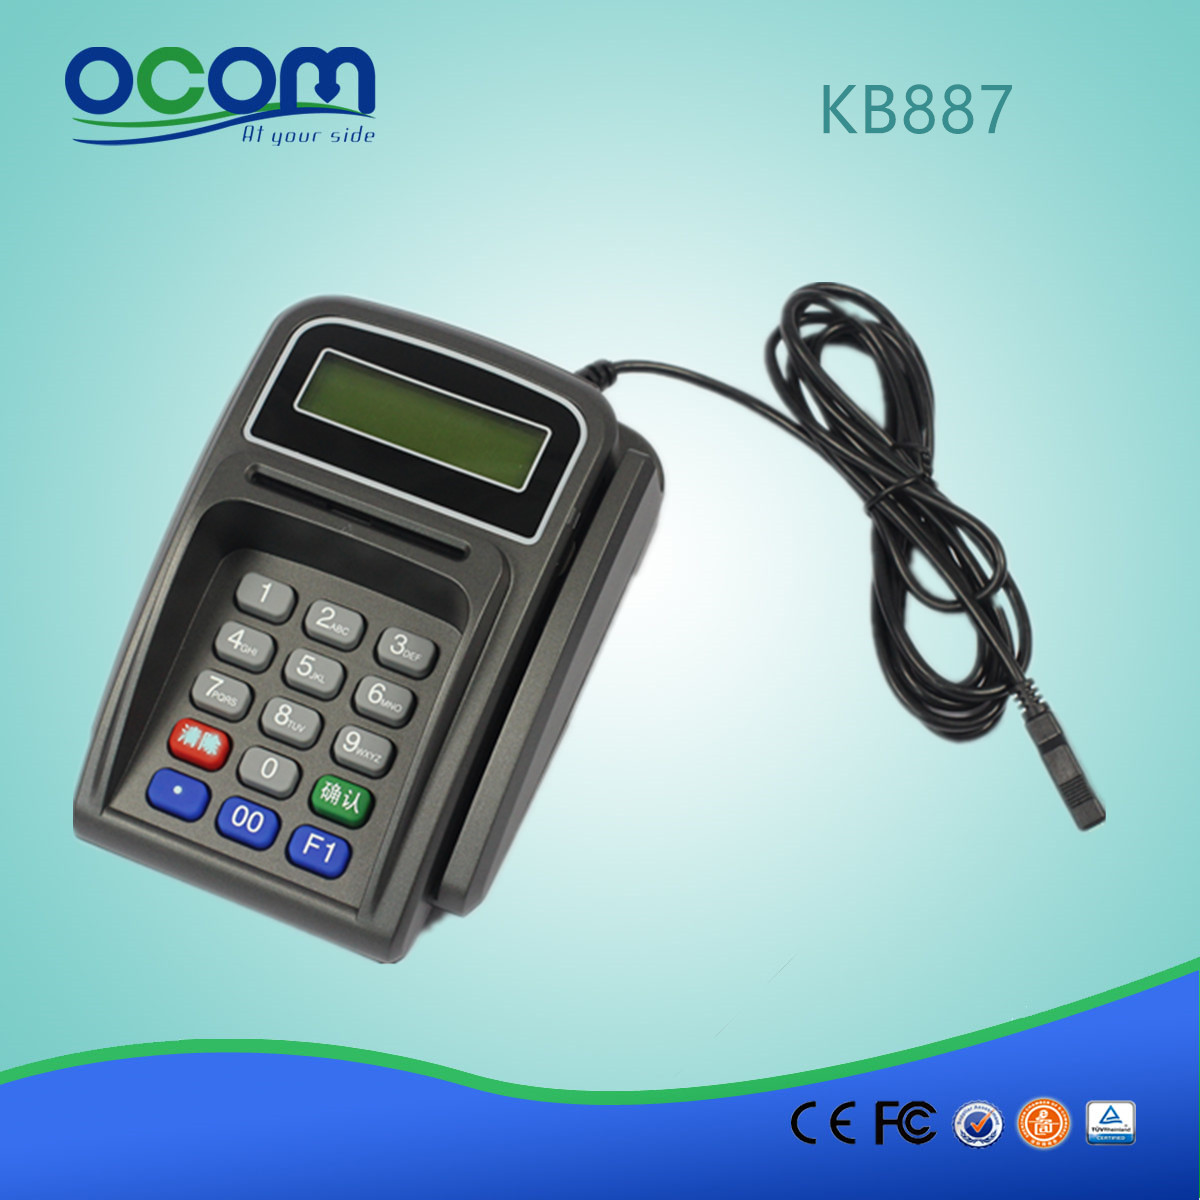 KB887 البسيطة برمجة المغناطيسي لوحة المفاتيح لوحة المفاتيح مع قارئ البطاقة الذكية قارئ البطاقة الممغنطة